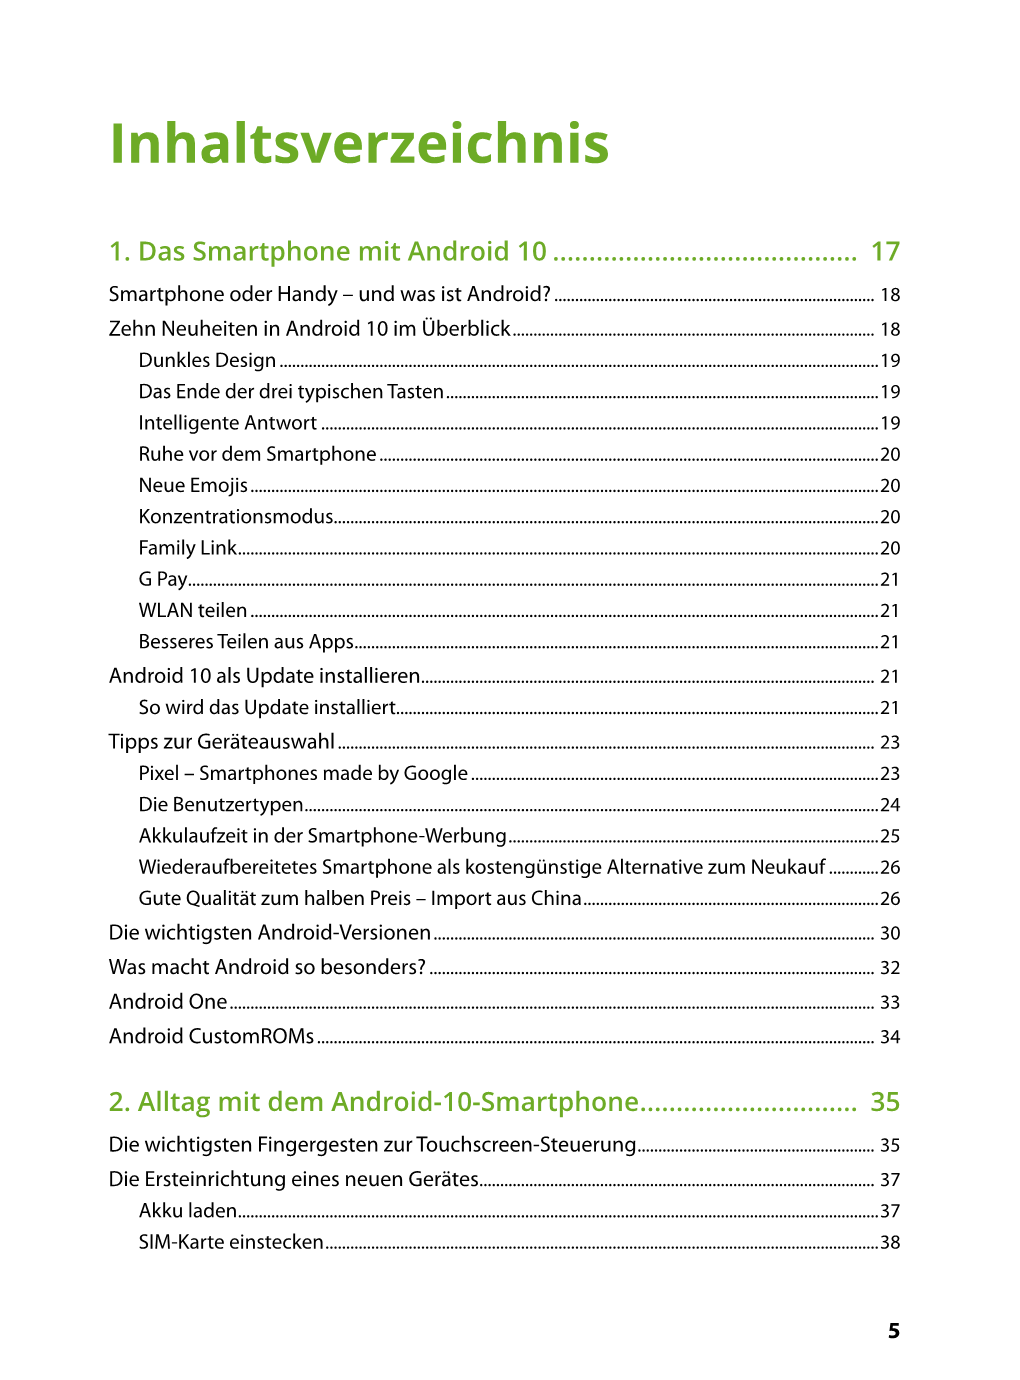 Dein Smartphone Mit Android 10 – ISBN 978-3-95982-200-8 – © 2020 by Markt+Technik Verlag Gmbh